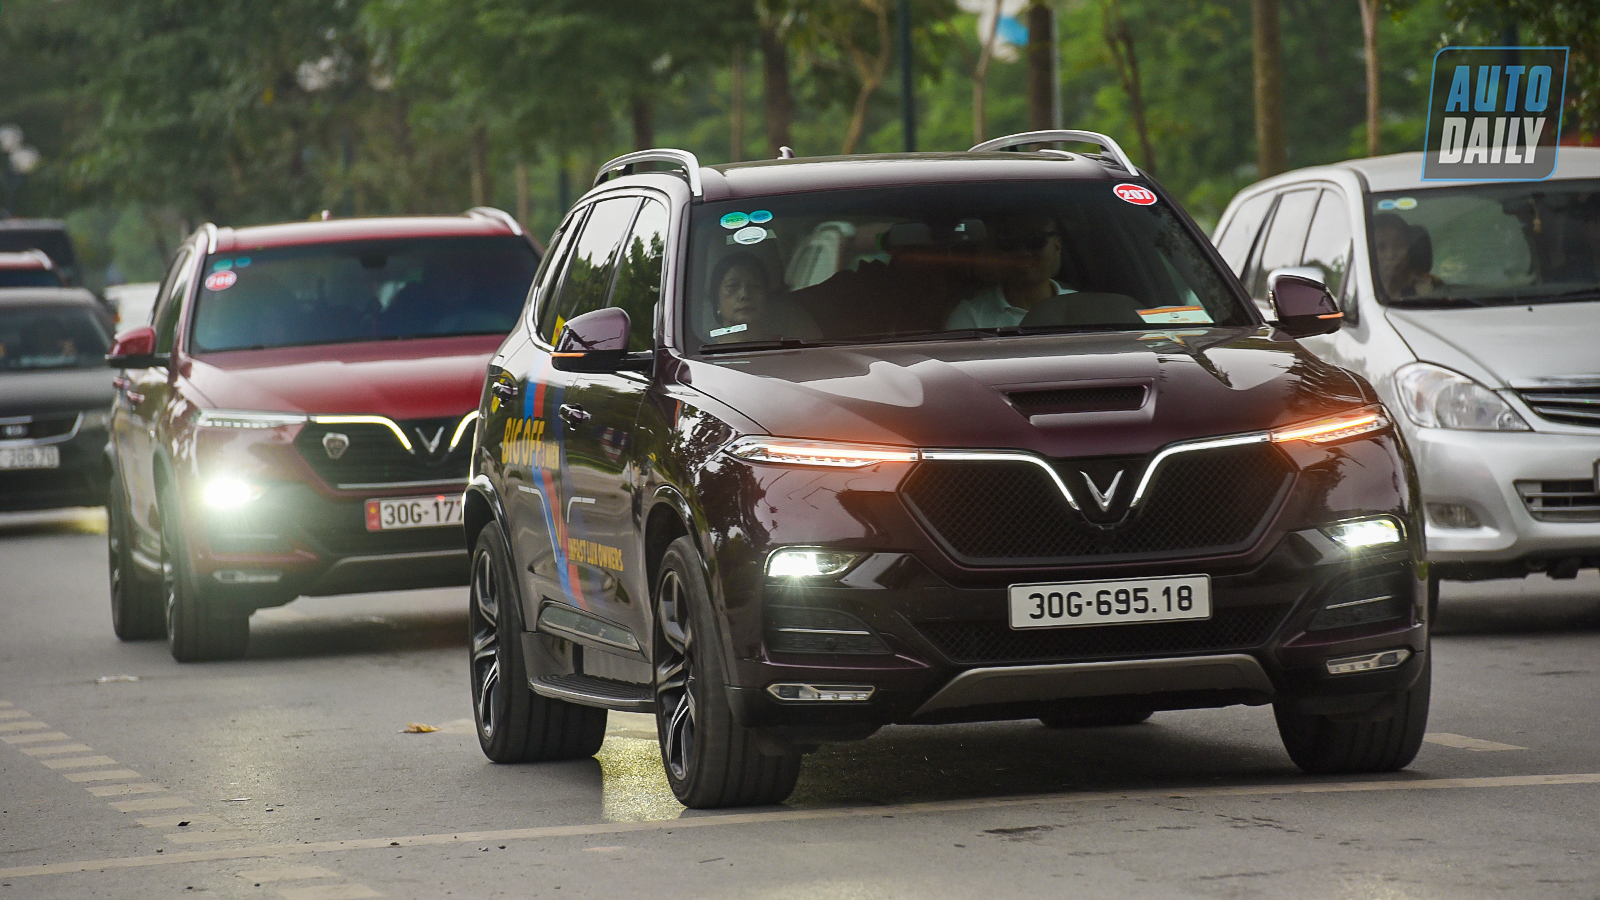 Chùm ảnh gần 60 xe VinFast Lux tại Hà Nội xuất phát Offline 3 miền tại Hội An dsc-6356-copy.jpg